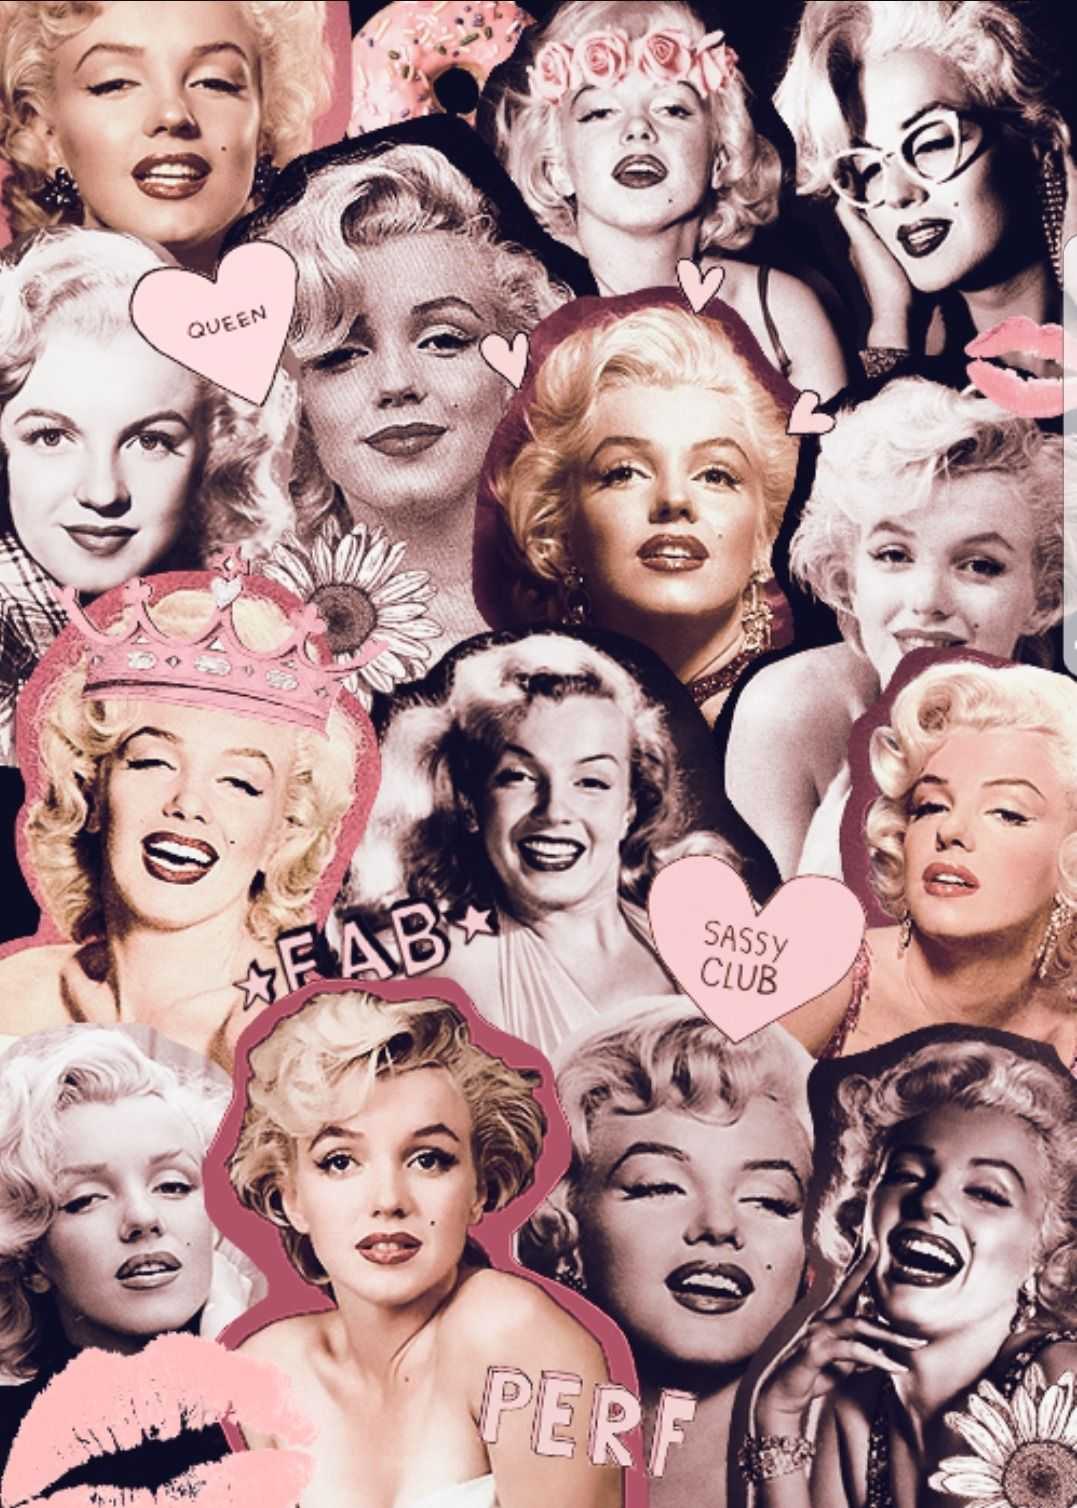 Ipad Marilyn Monroe Wallpaper 1